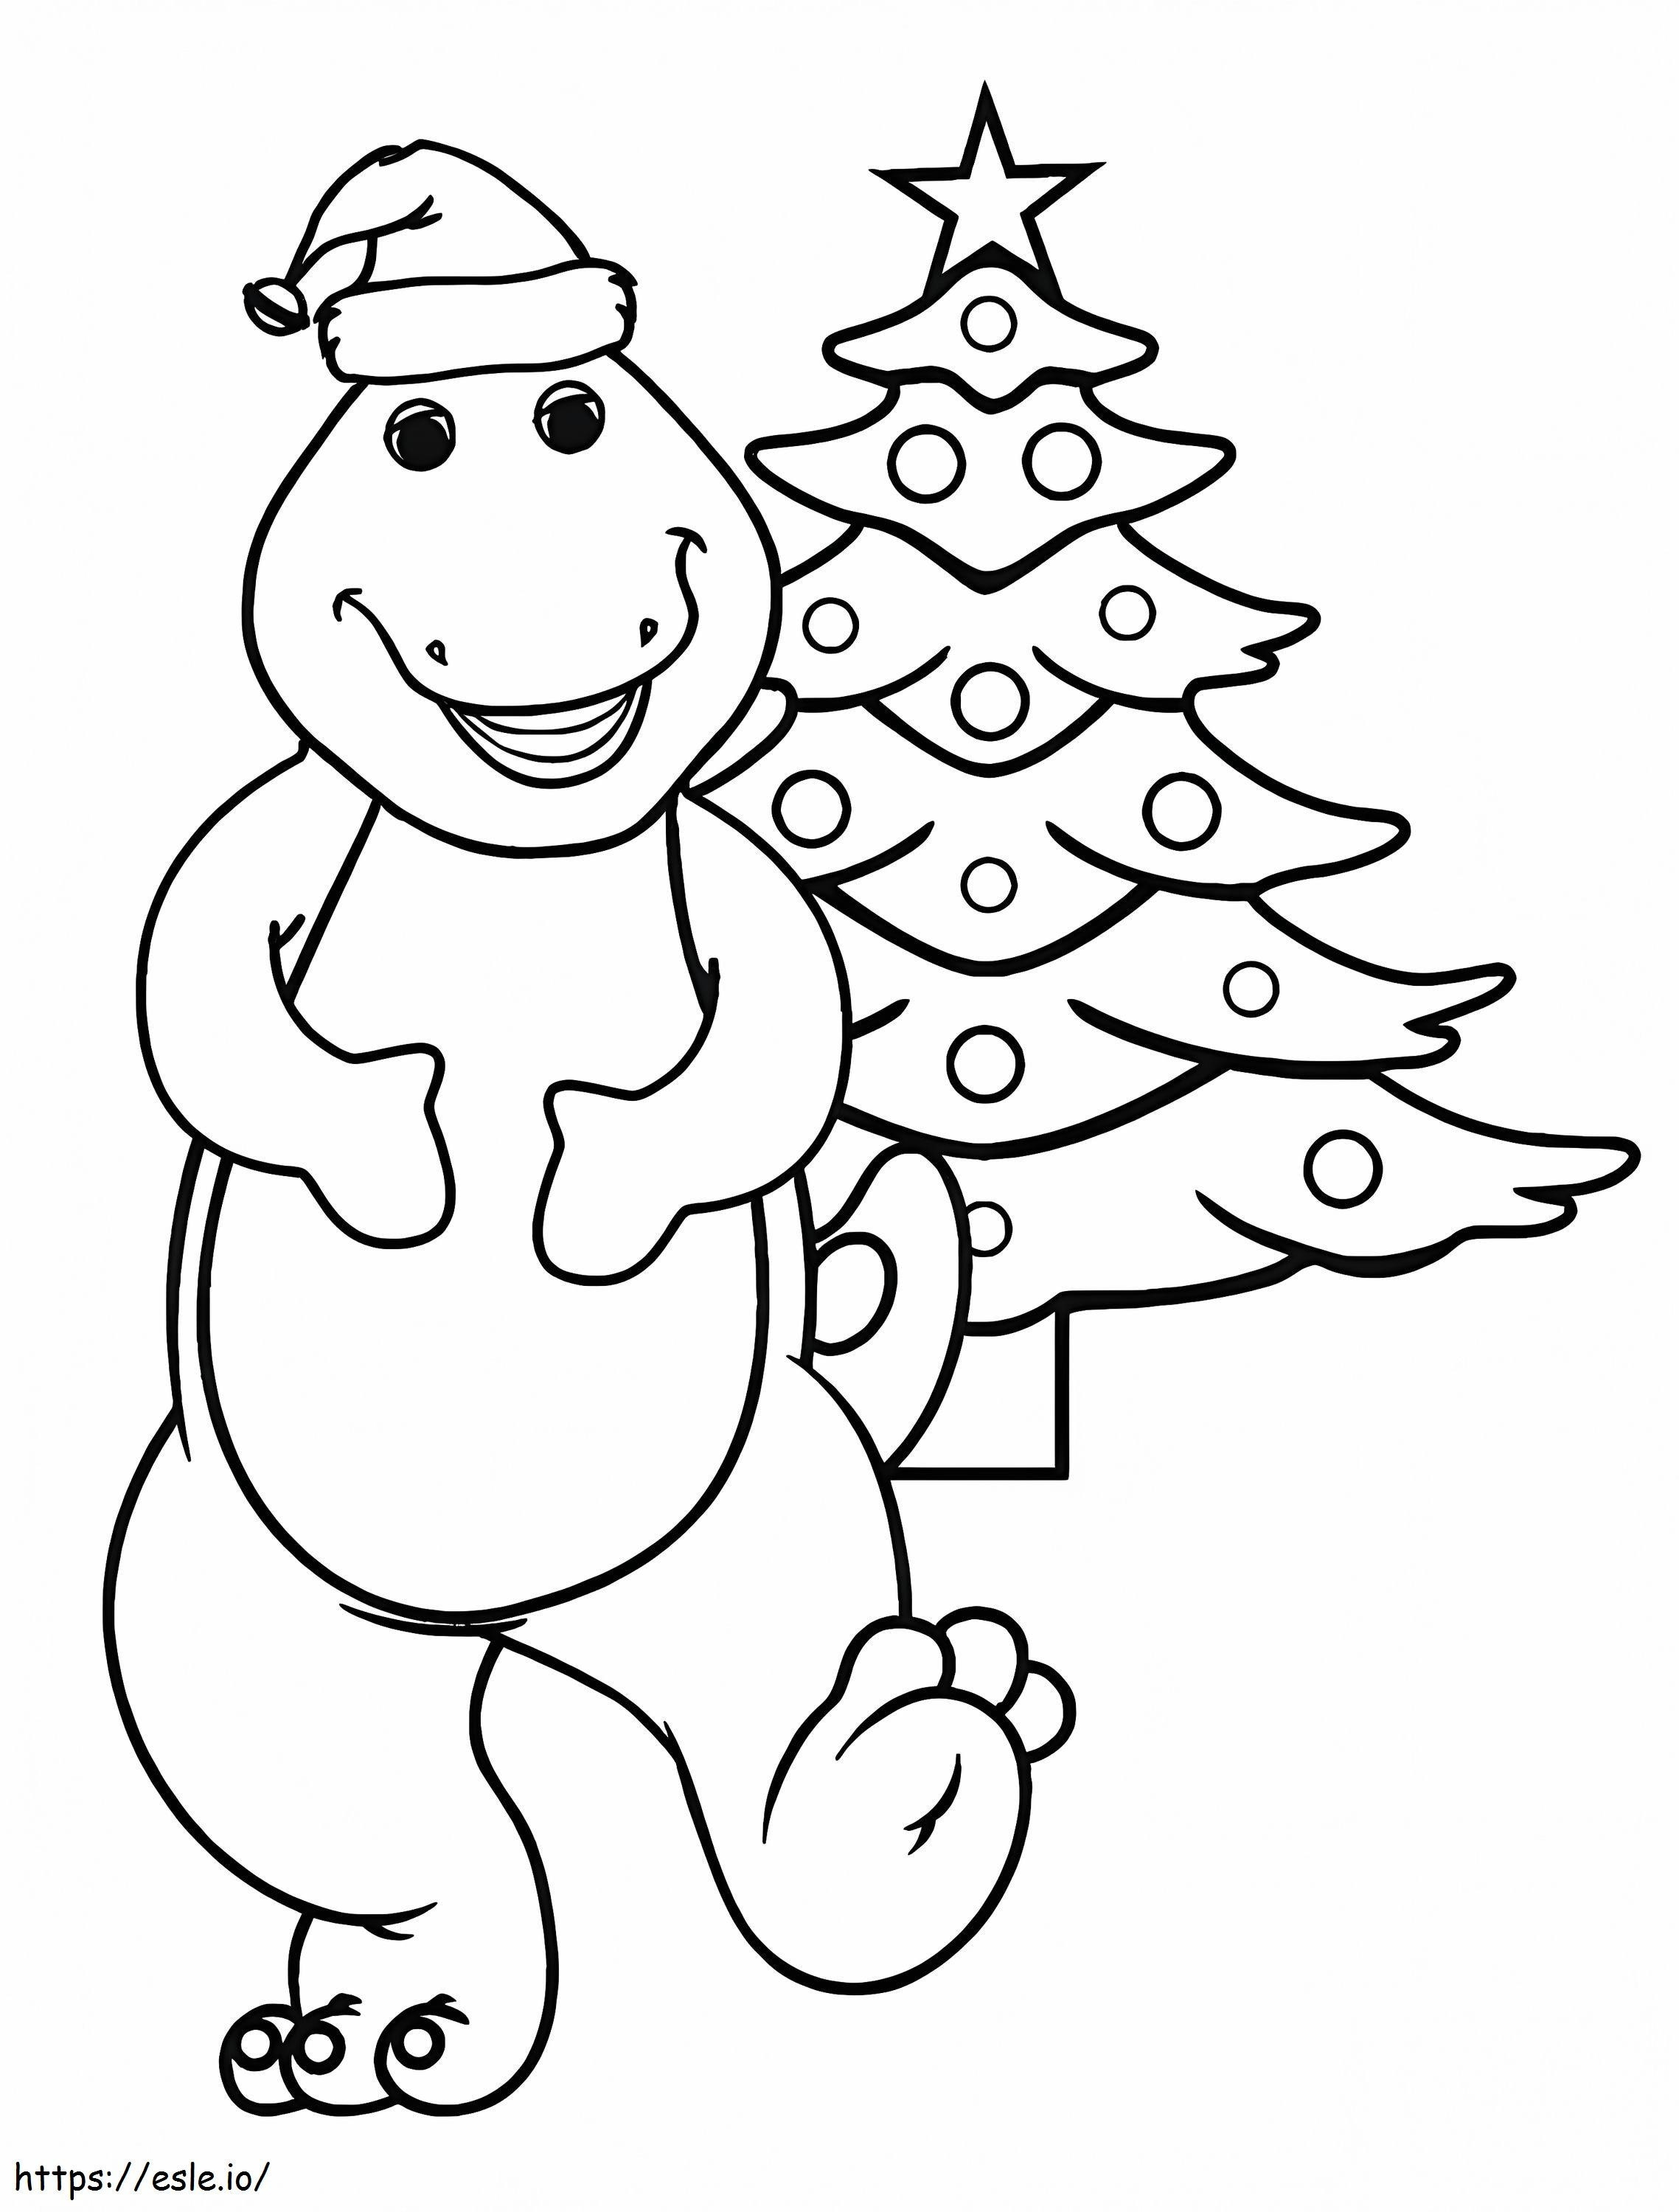 Coloriage Barney et le sapin de Noël à imprimer dessin